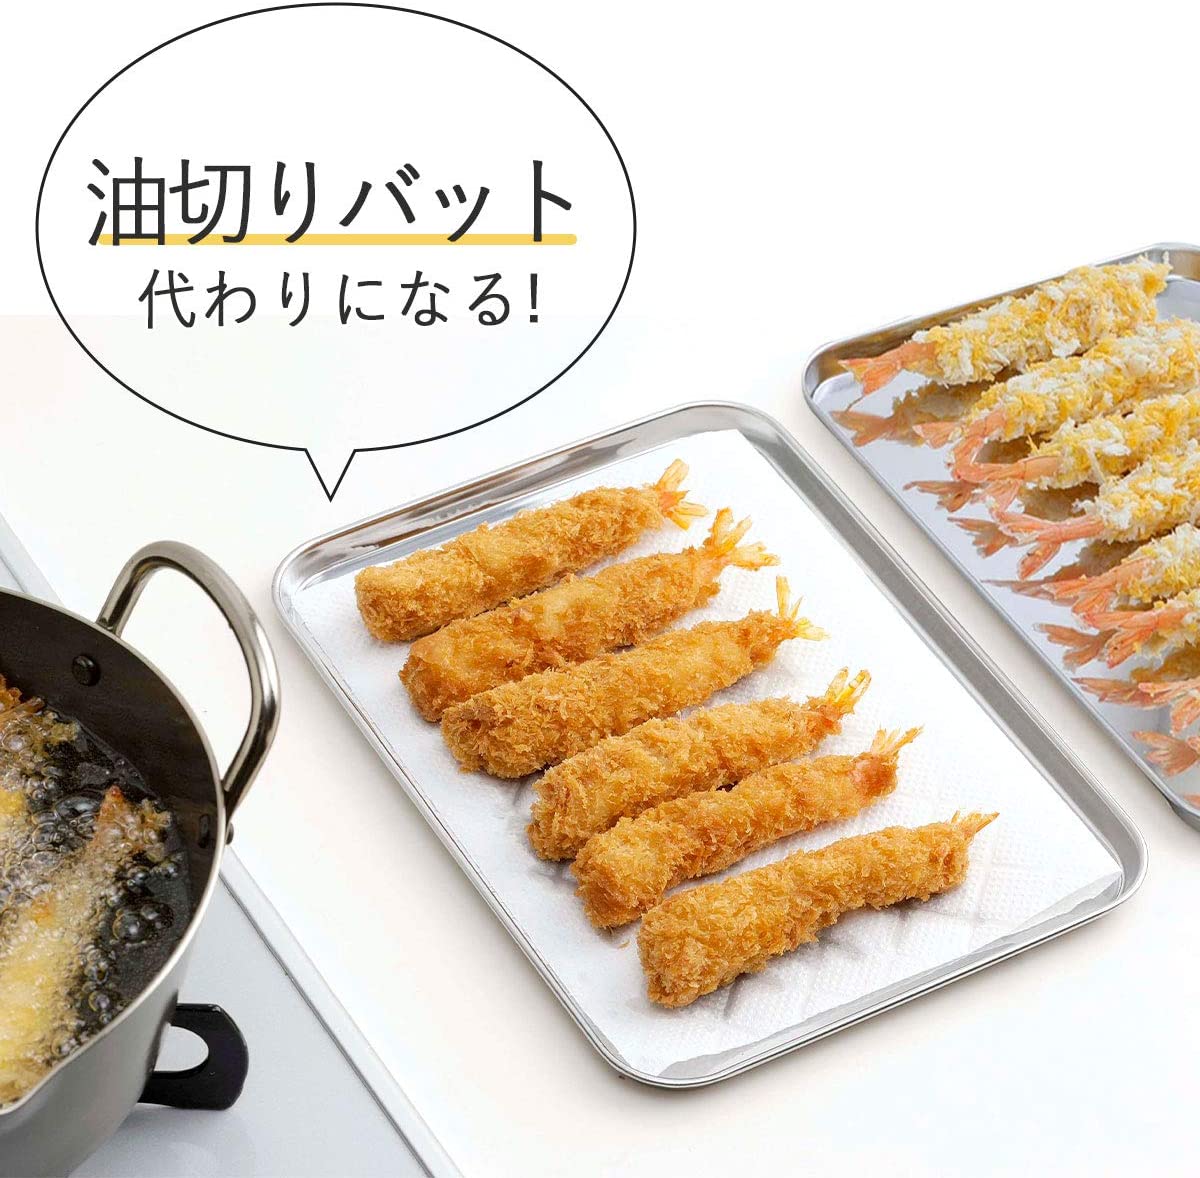 Khay đựng thực phẩm đa năng Echo Metal - Hàng nội địa Nhật Bản |#Made in Japan| |#nhập khẩu chính hãng